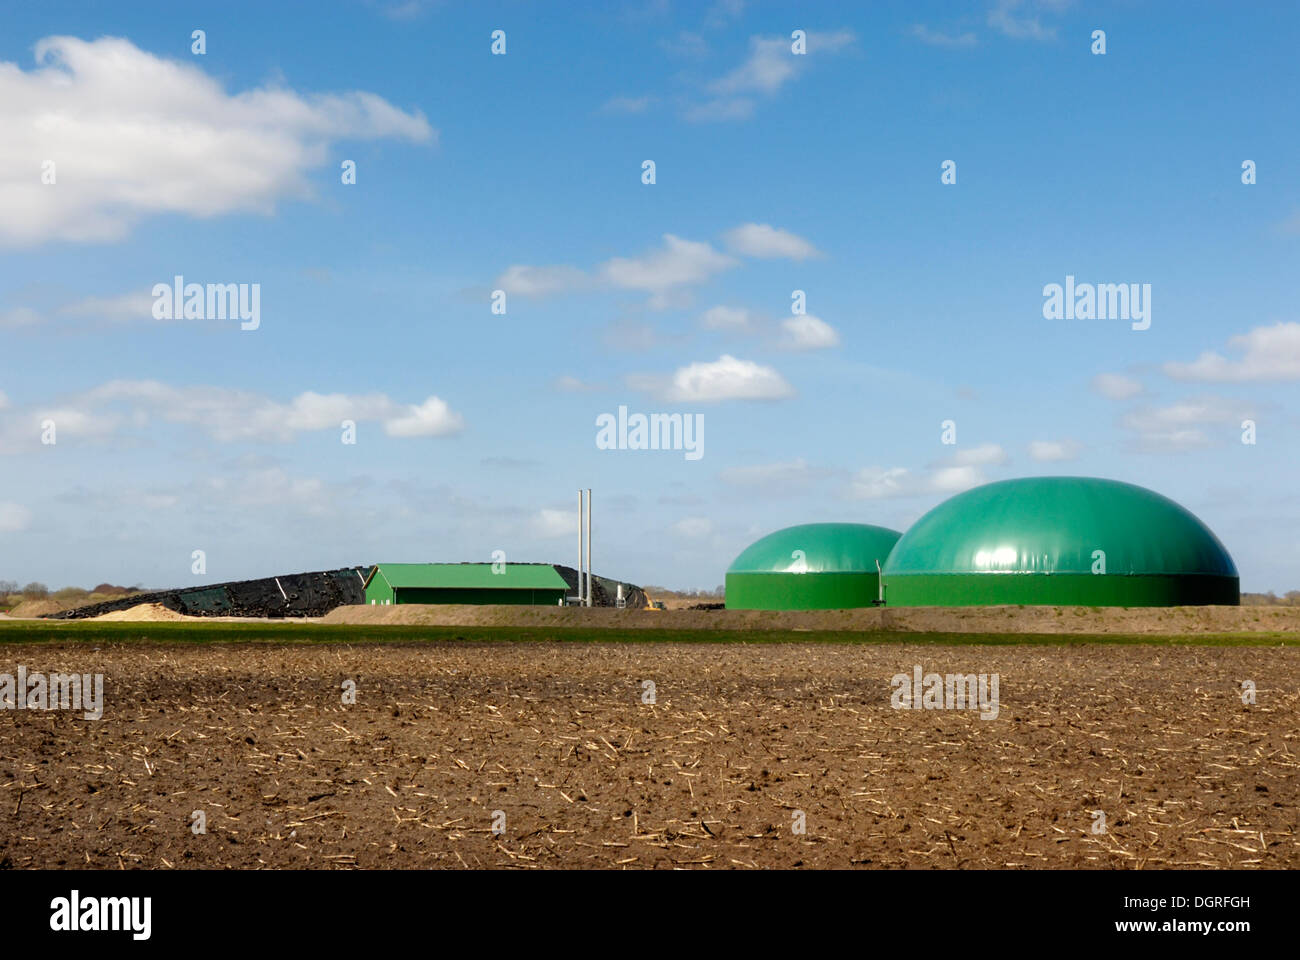 La planta de biogás agrícola, planta de energía de biomasa con unidad de cogeneración CHP, para la producción de electricidad y calor, y campos de maíz Foto de stock